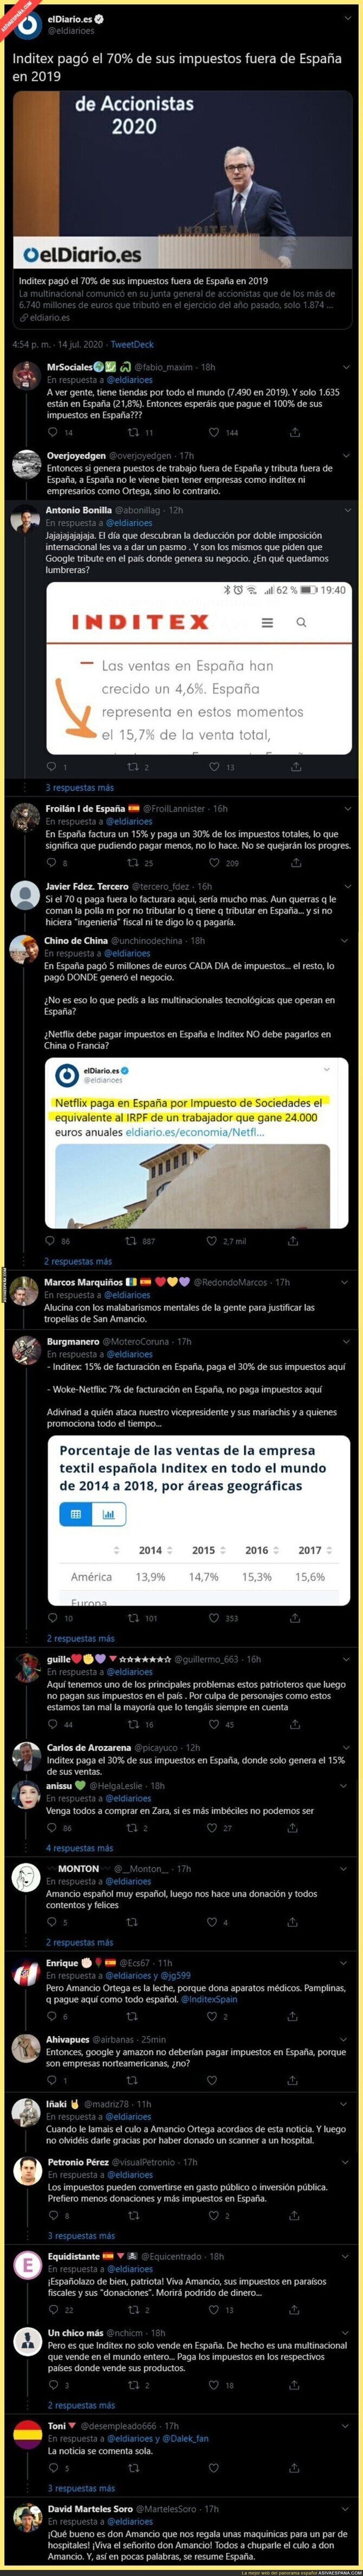 Los comentarios de fachas intentando justificar que Amancio Ortega con Inditex pagó el 70% de sus impuestos fuera de España